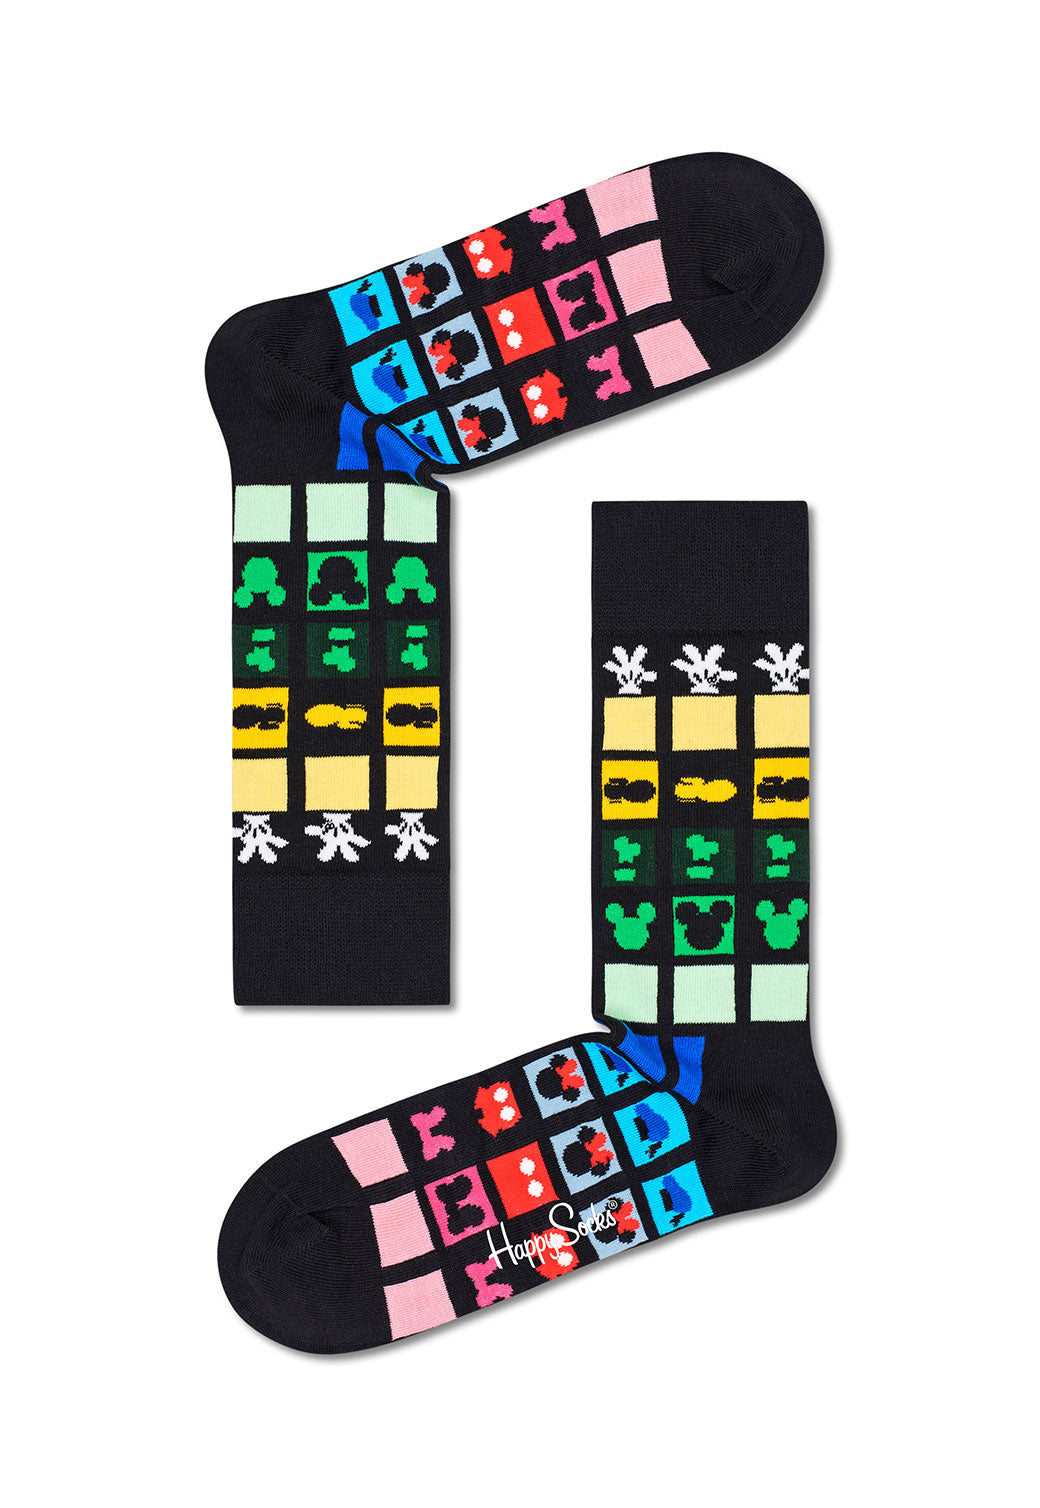 זוג גרביים צבעוניות במהדורת דיסני